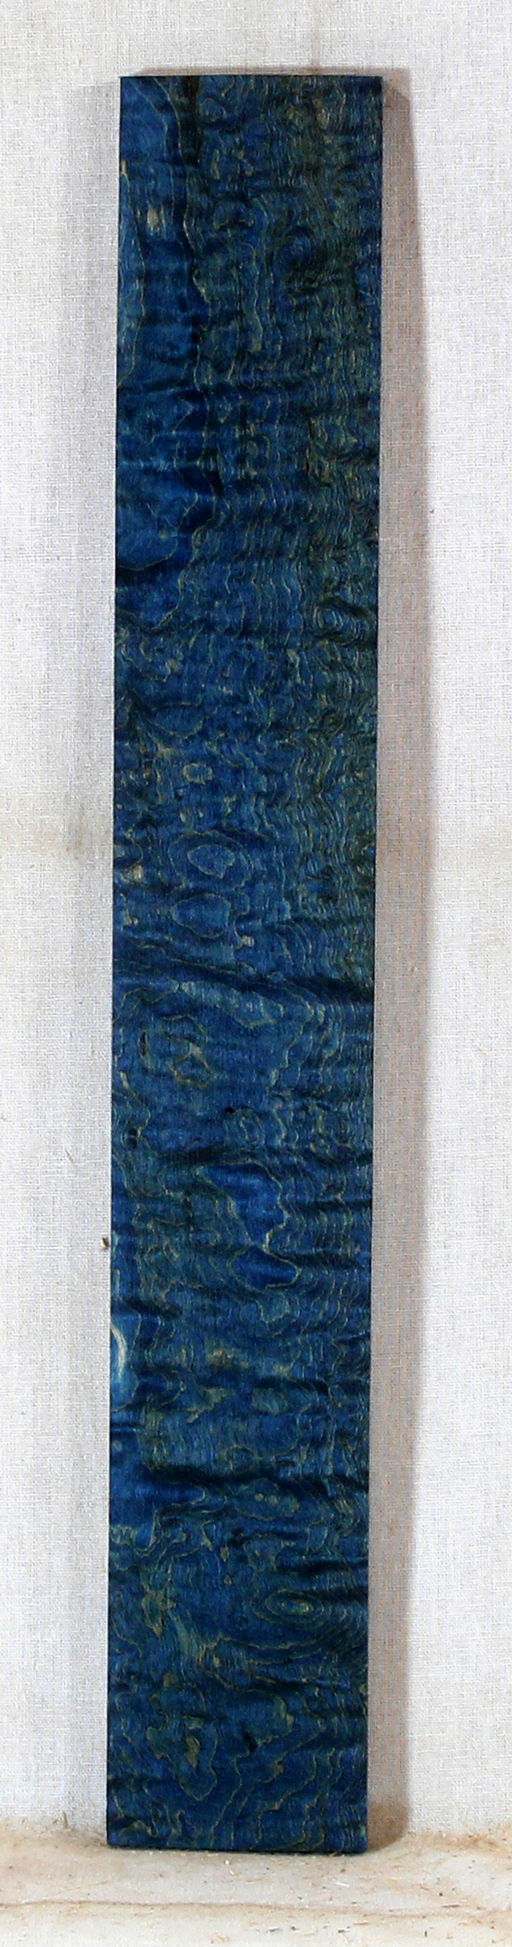 Maple Ukulele Blue Fingerboard Stabilized (EH61)